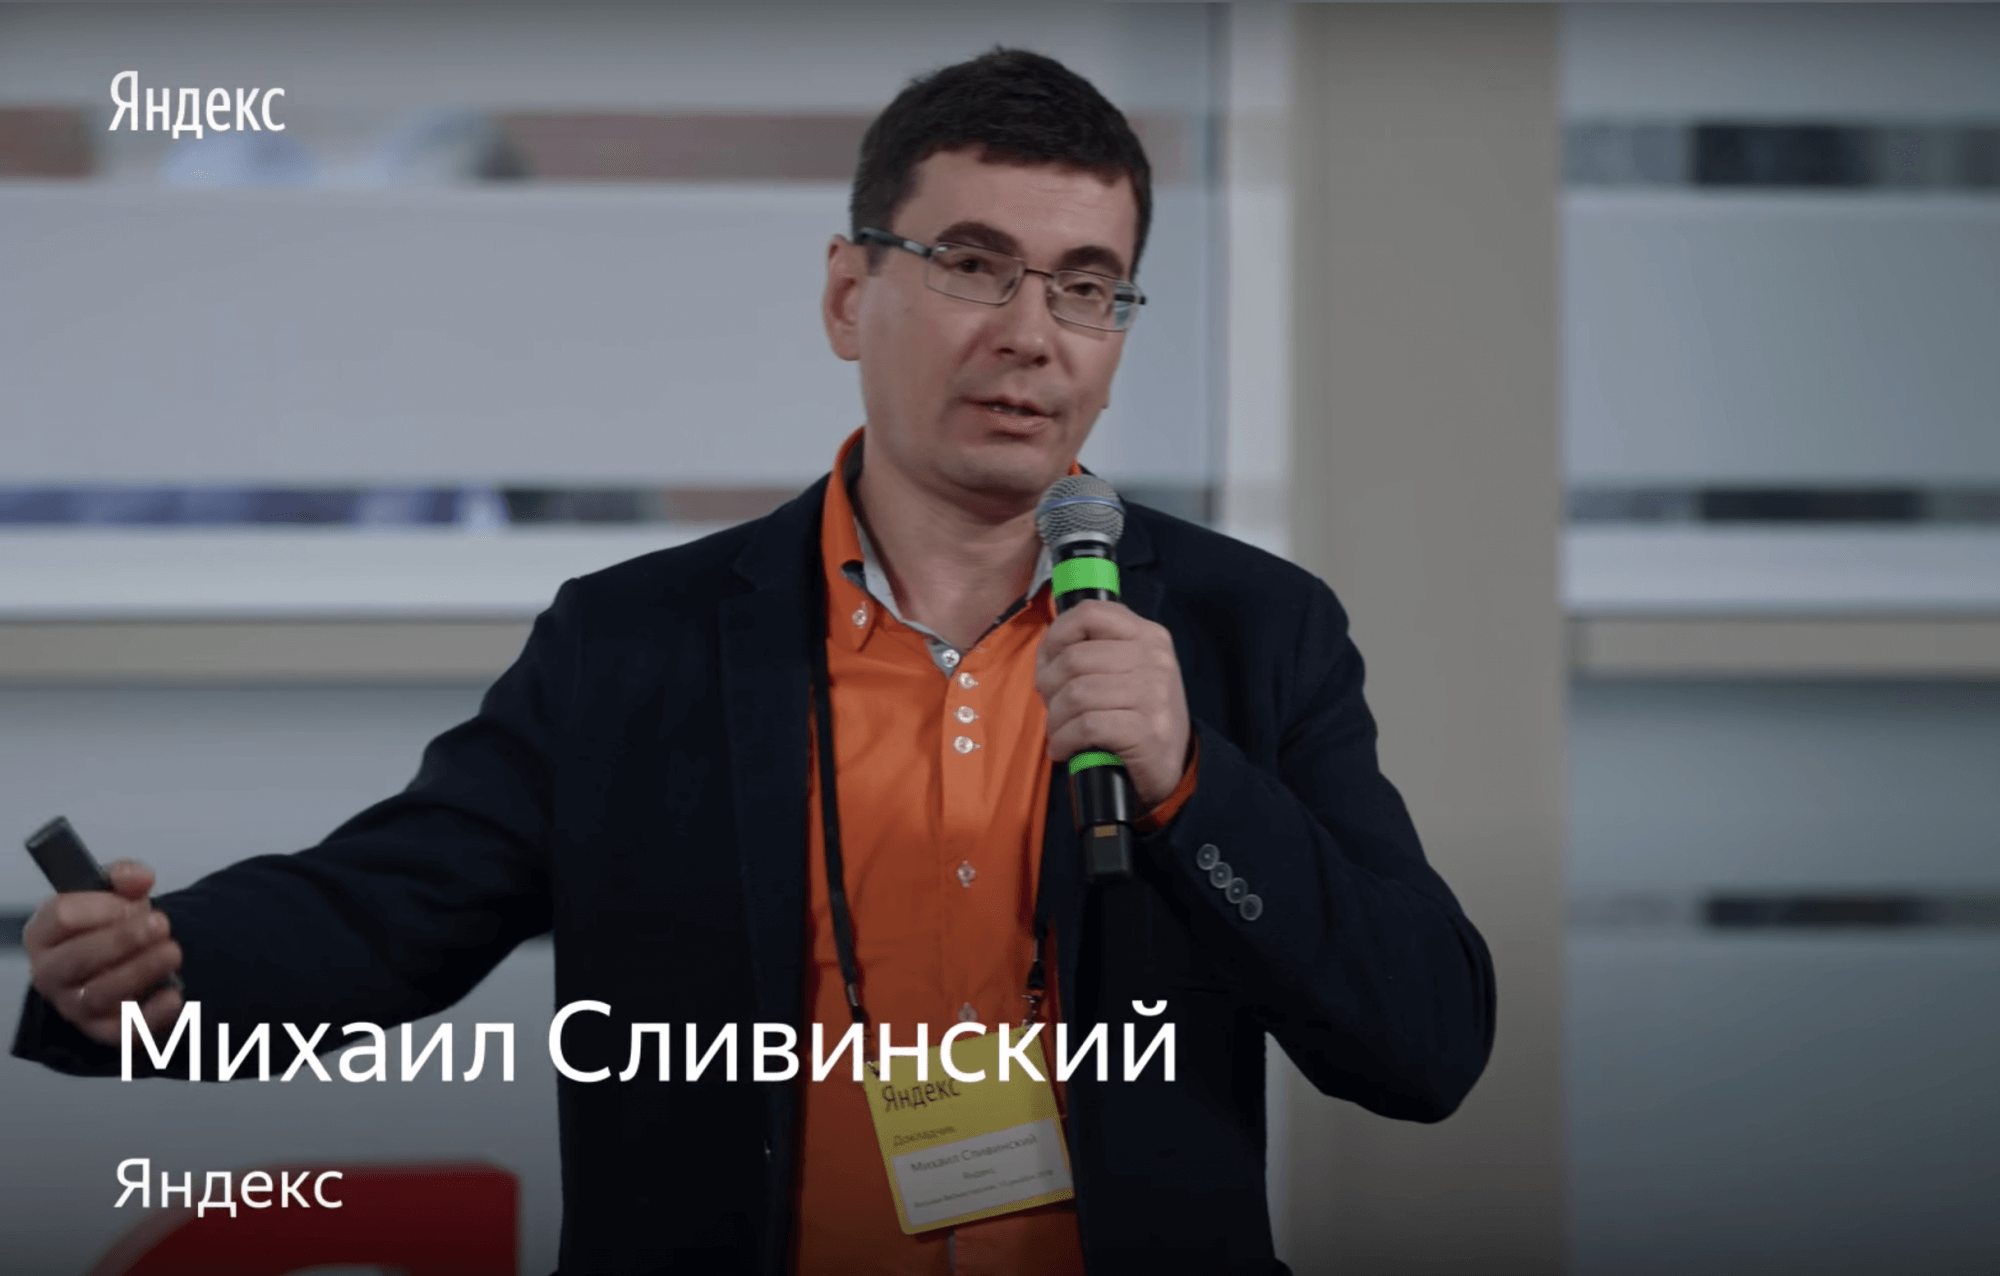 Яндекс опубликовал интервью с Михаилом Сливинским